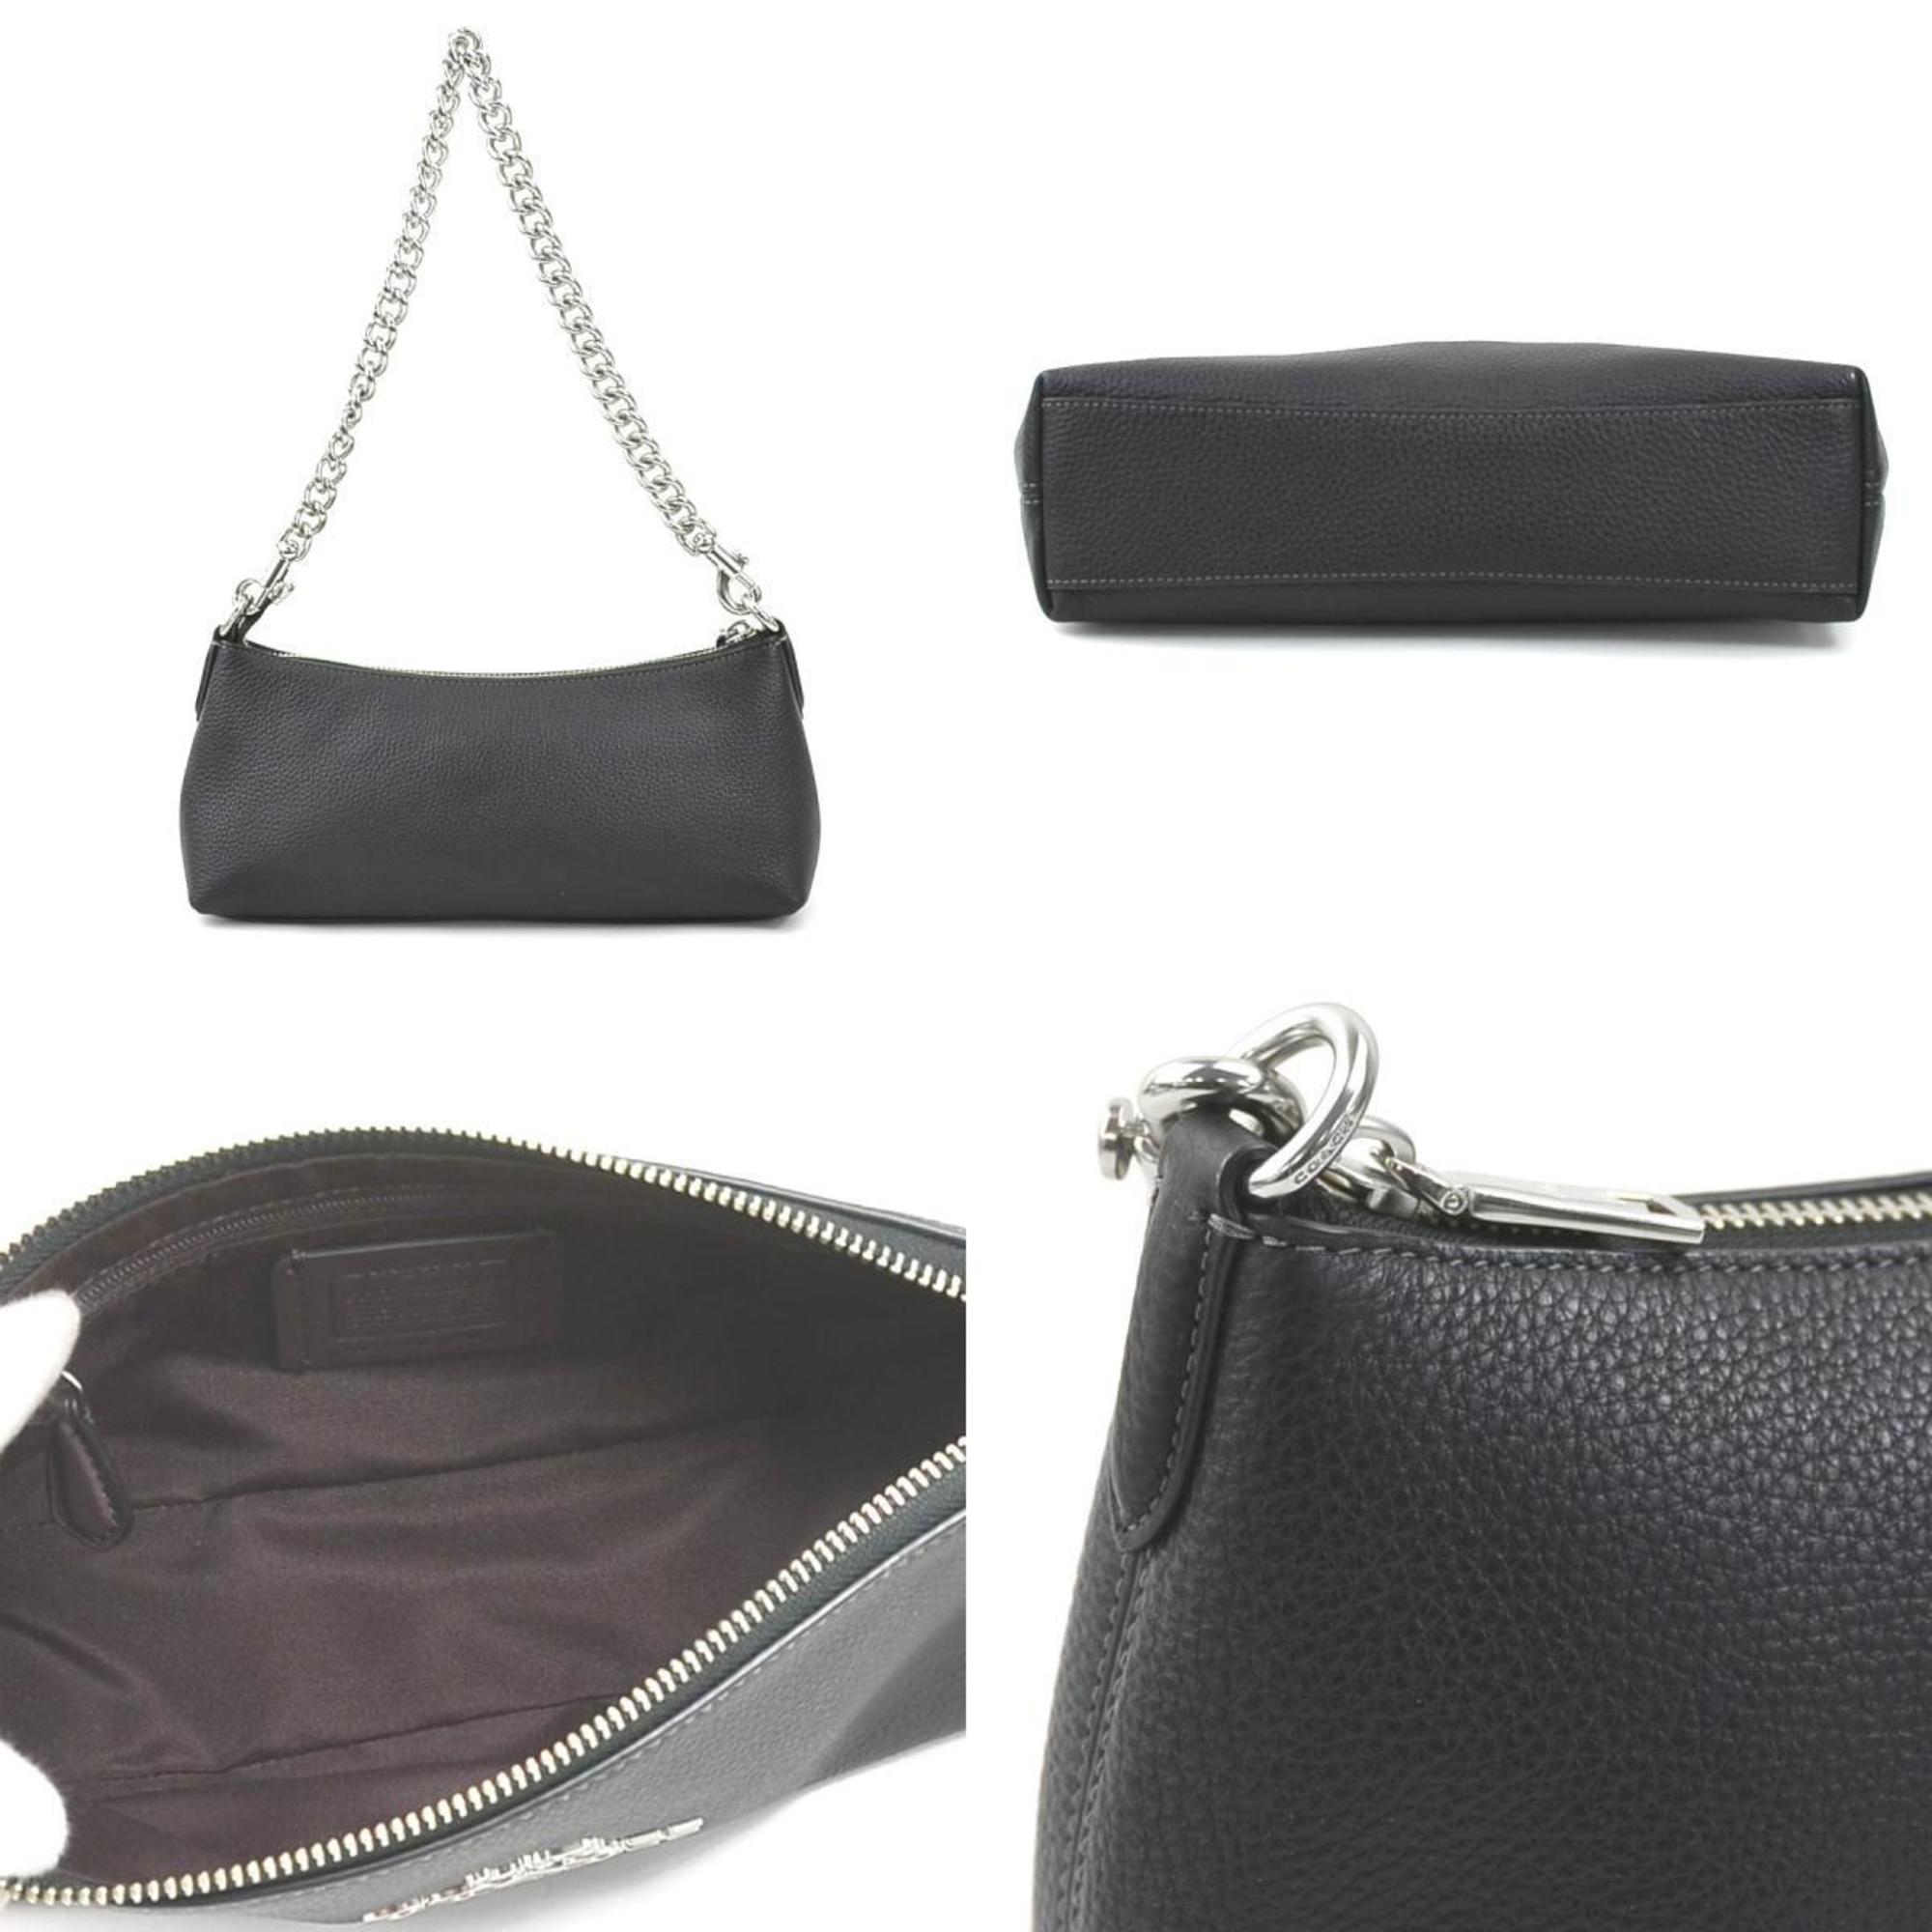 Black Leather Shoulder Bag with Shoulder Strap